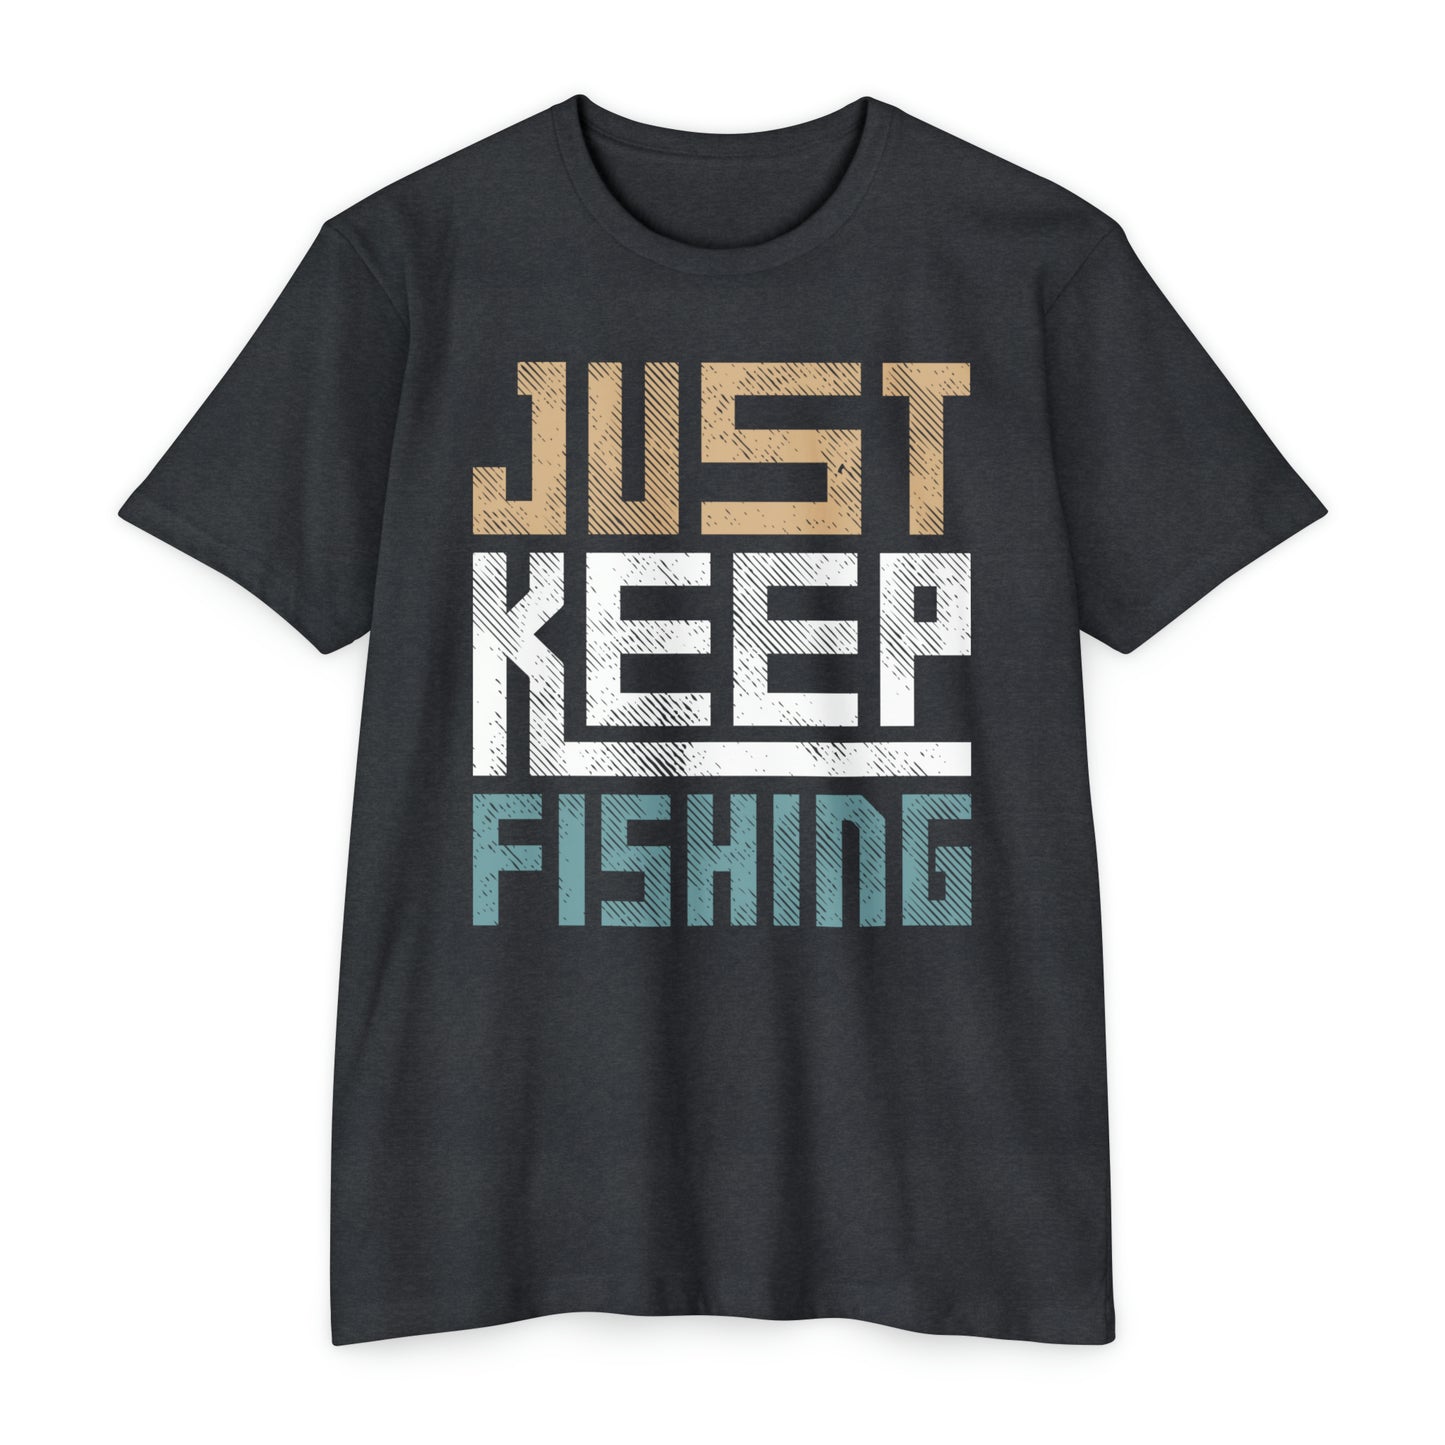 Just Keep Fishing T-shirt